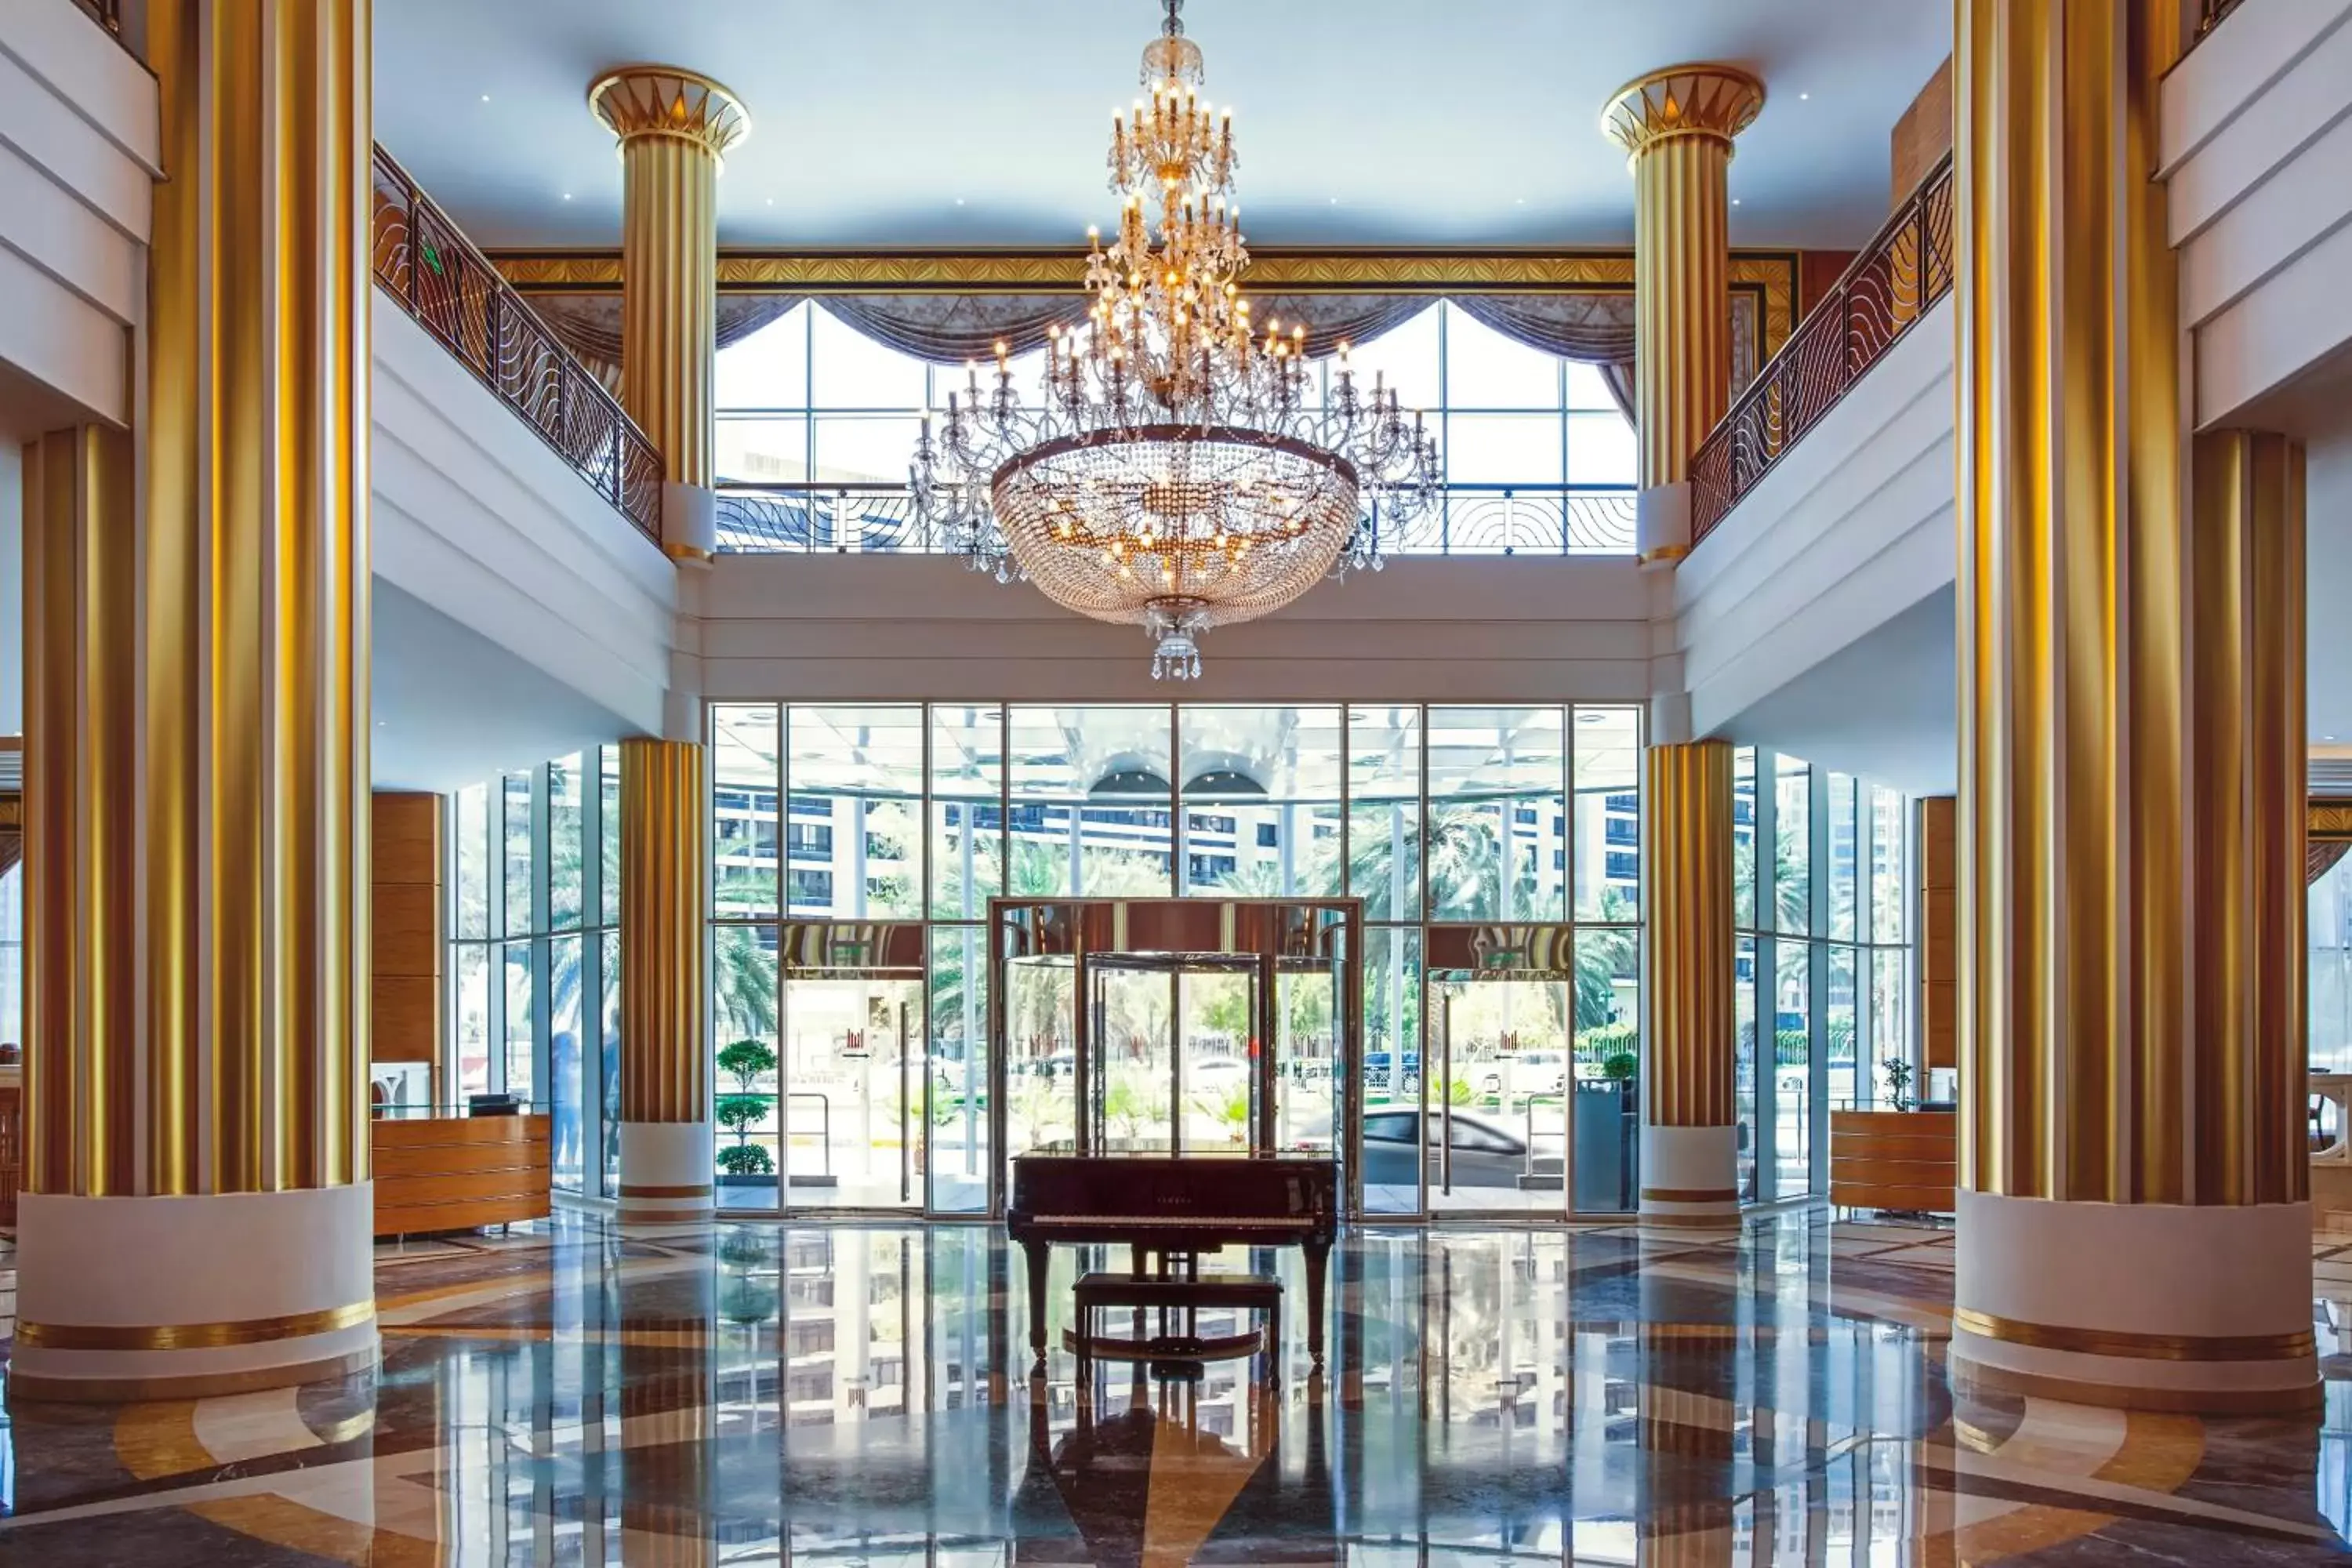 Lobby or reception in Corniche Hotel Abu Dhabi